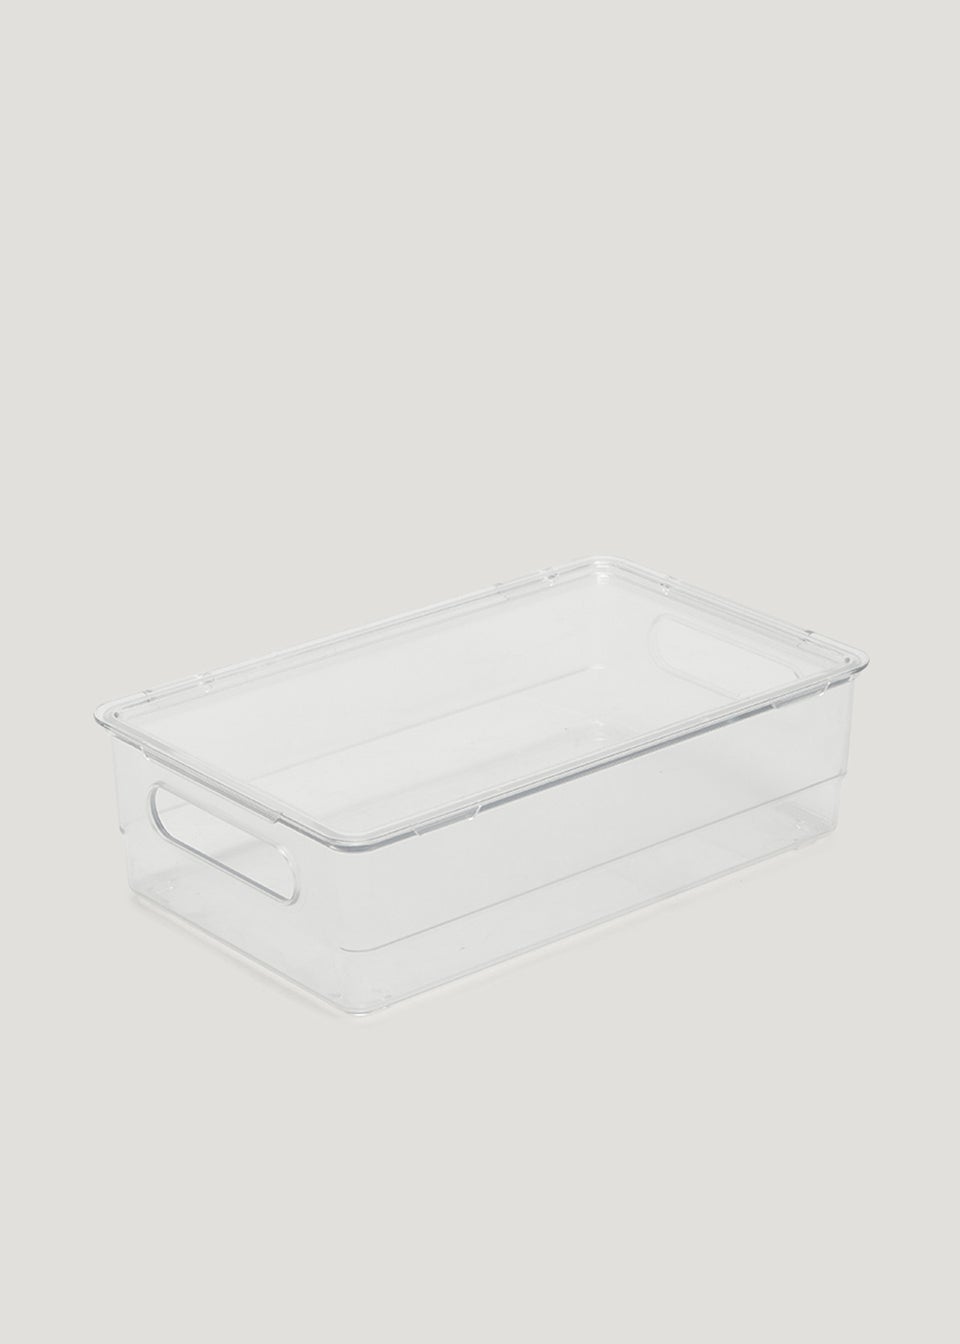 Clear Acrylic Fridge Storage Tray With Lid (26cm x 16cm x 7.5cm)